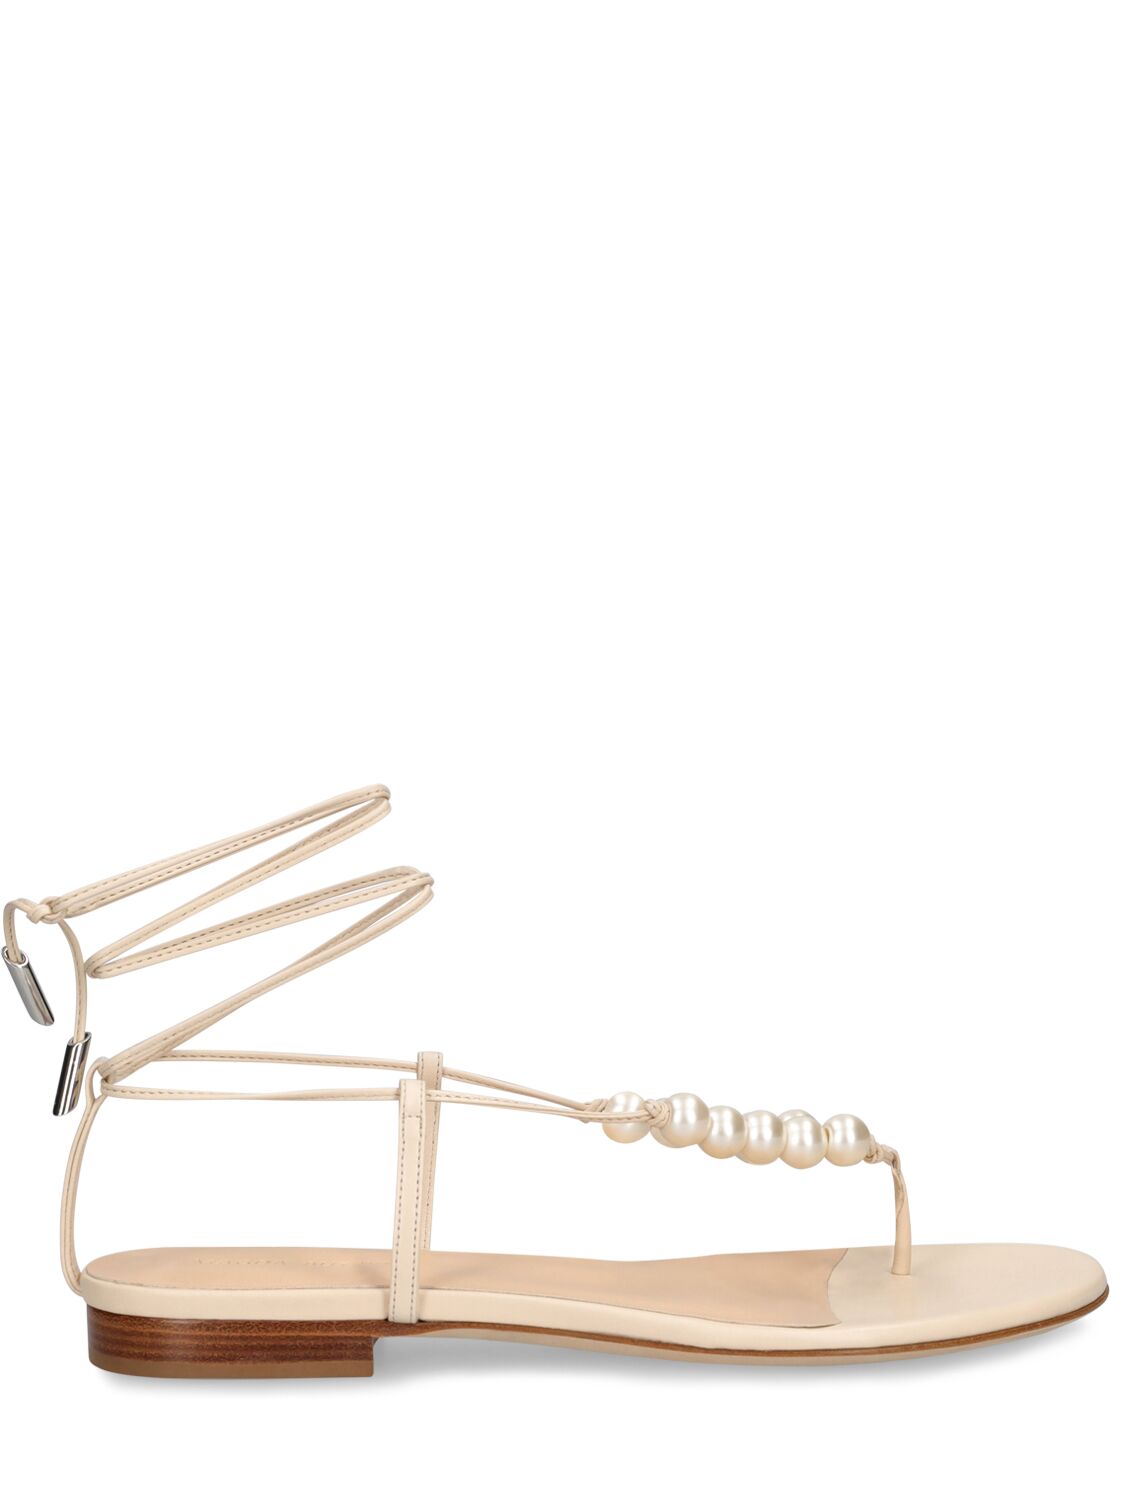 Magda Butrym 10mm Grosgrain & Pearls Flat Sandals In Cream